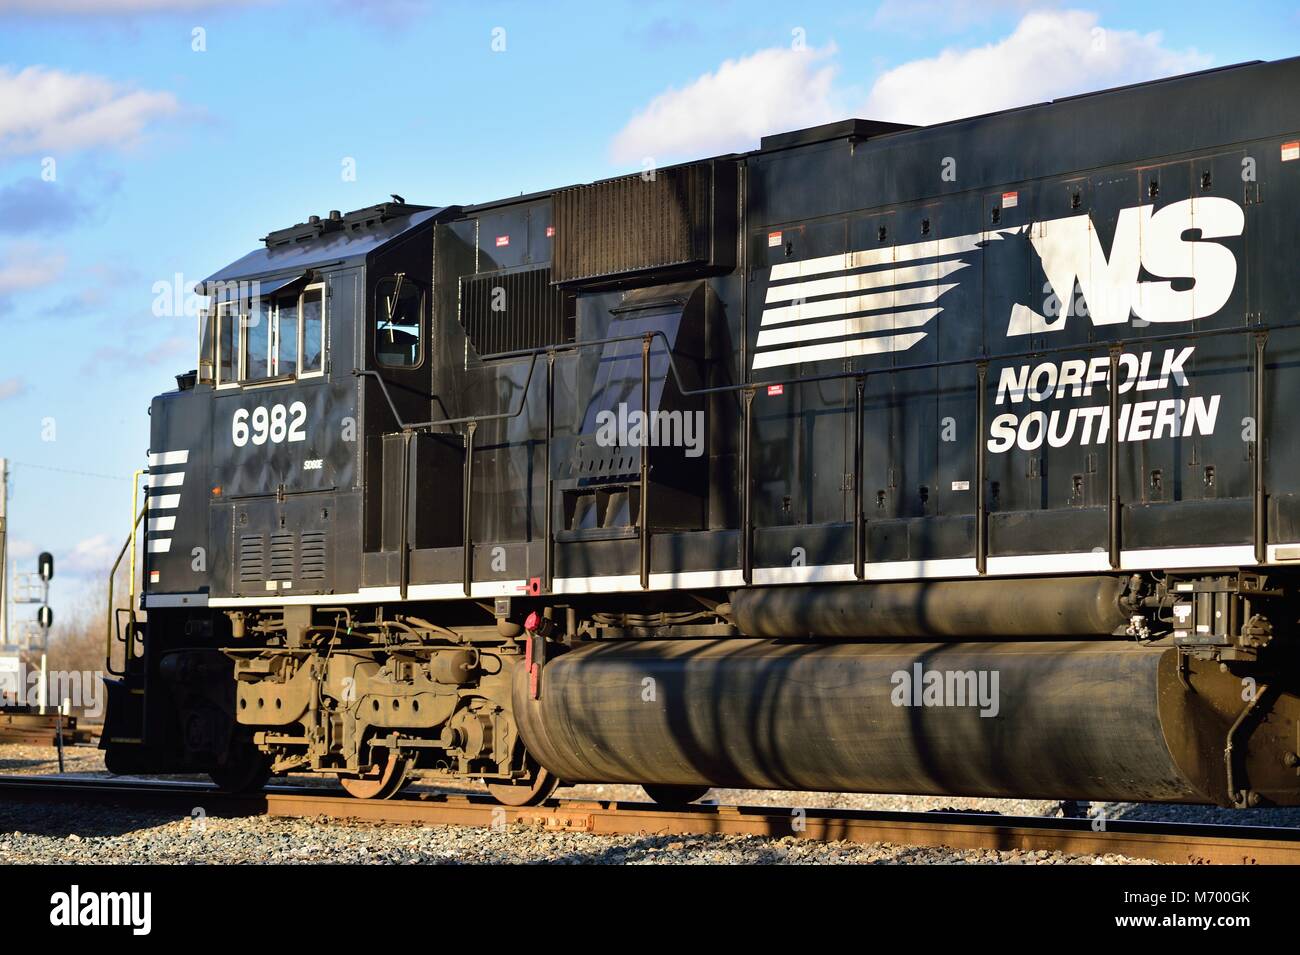 Elgin, Illinois, USA. Eine Lokomotive der Norfolk Southern Railway, die einen Zug durch einen Umsteigepunkt auf den Canadian National Railway Gleisen führt. Stockfoto